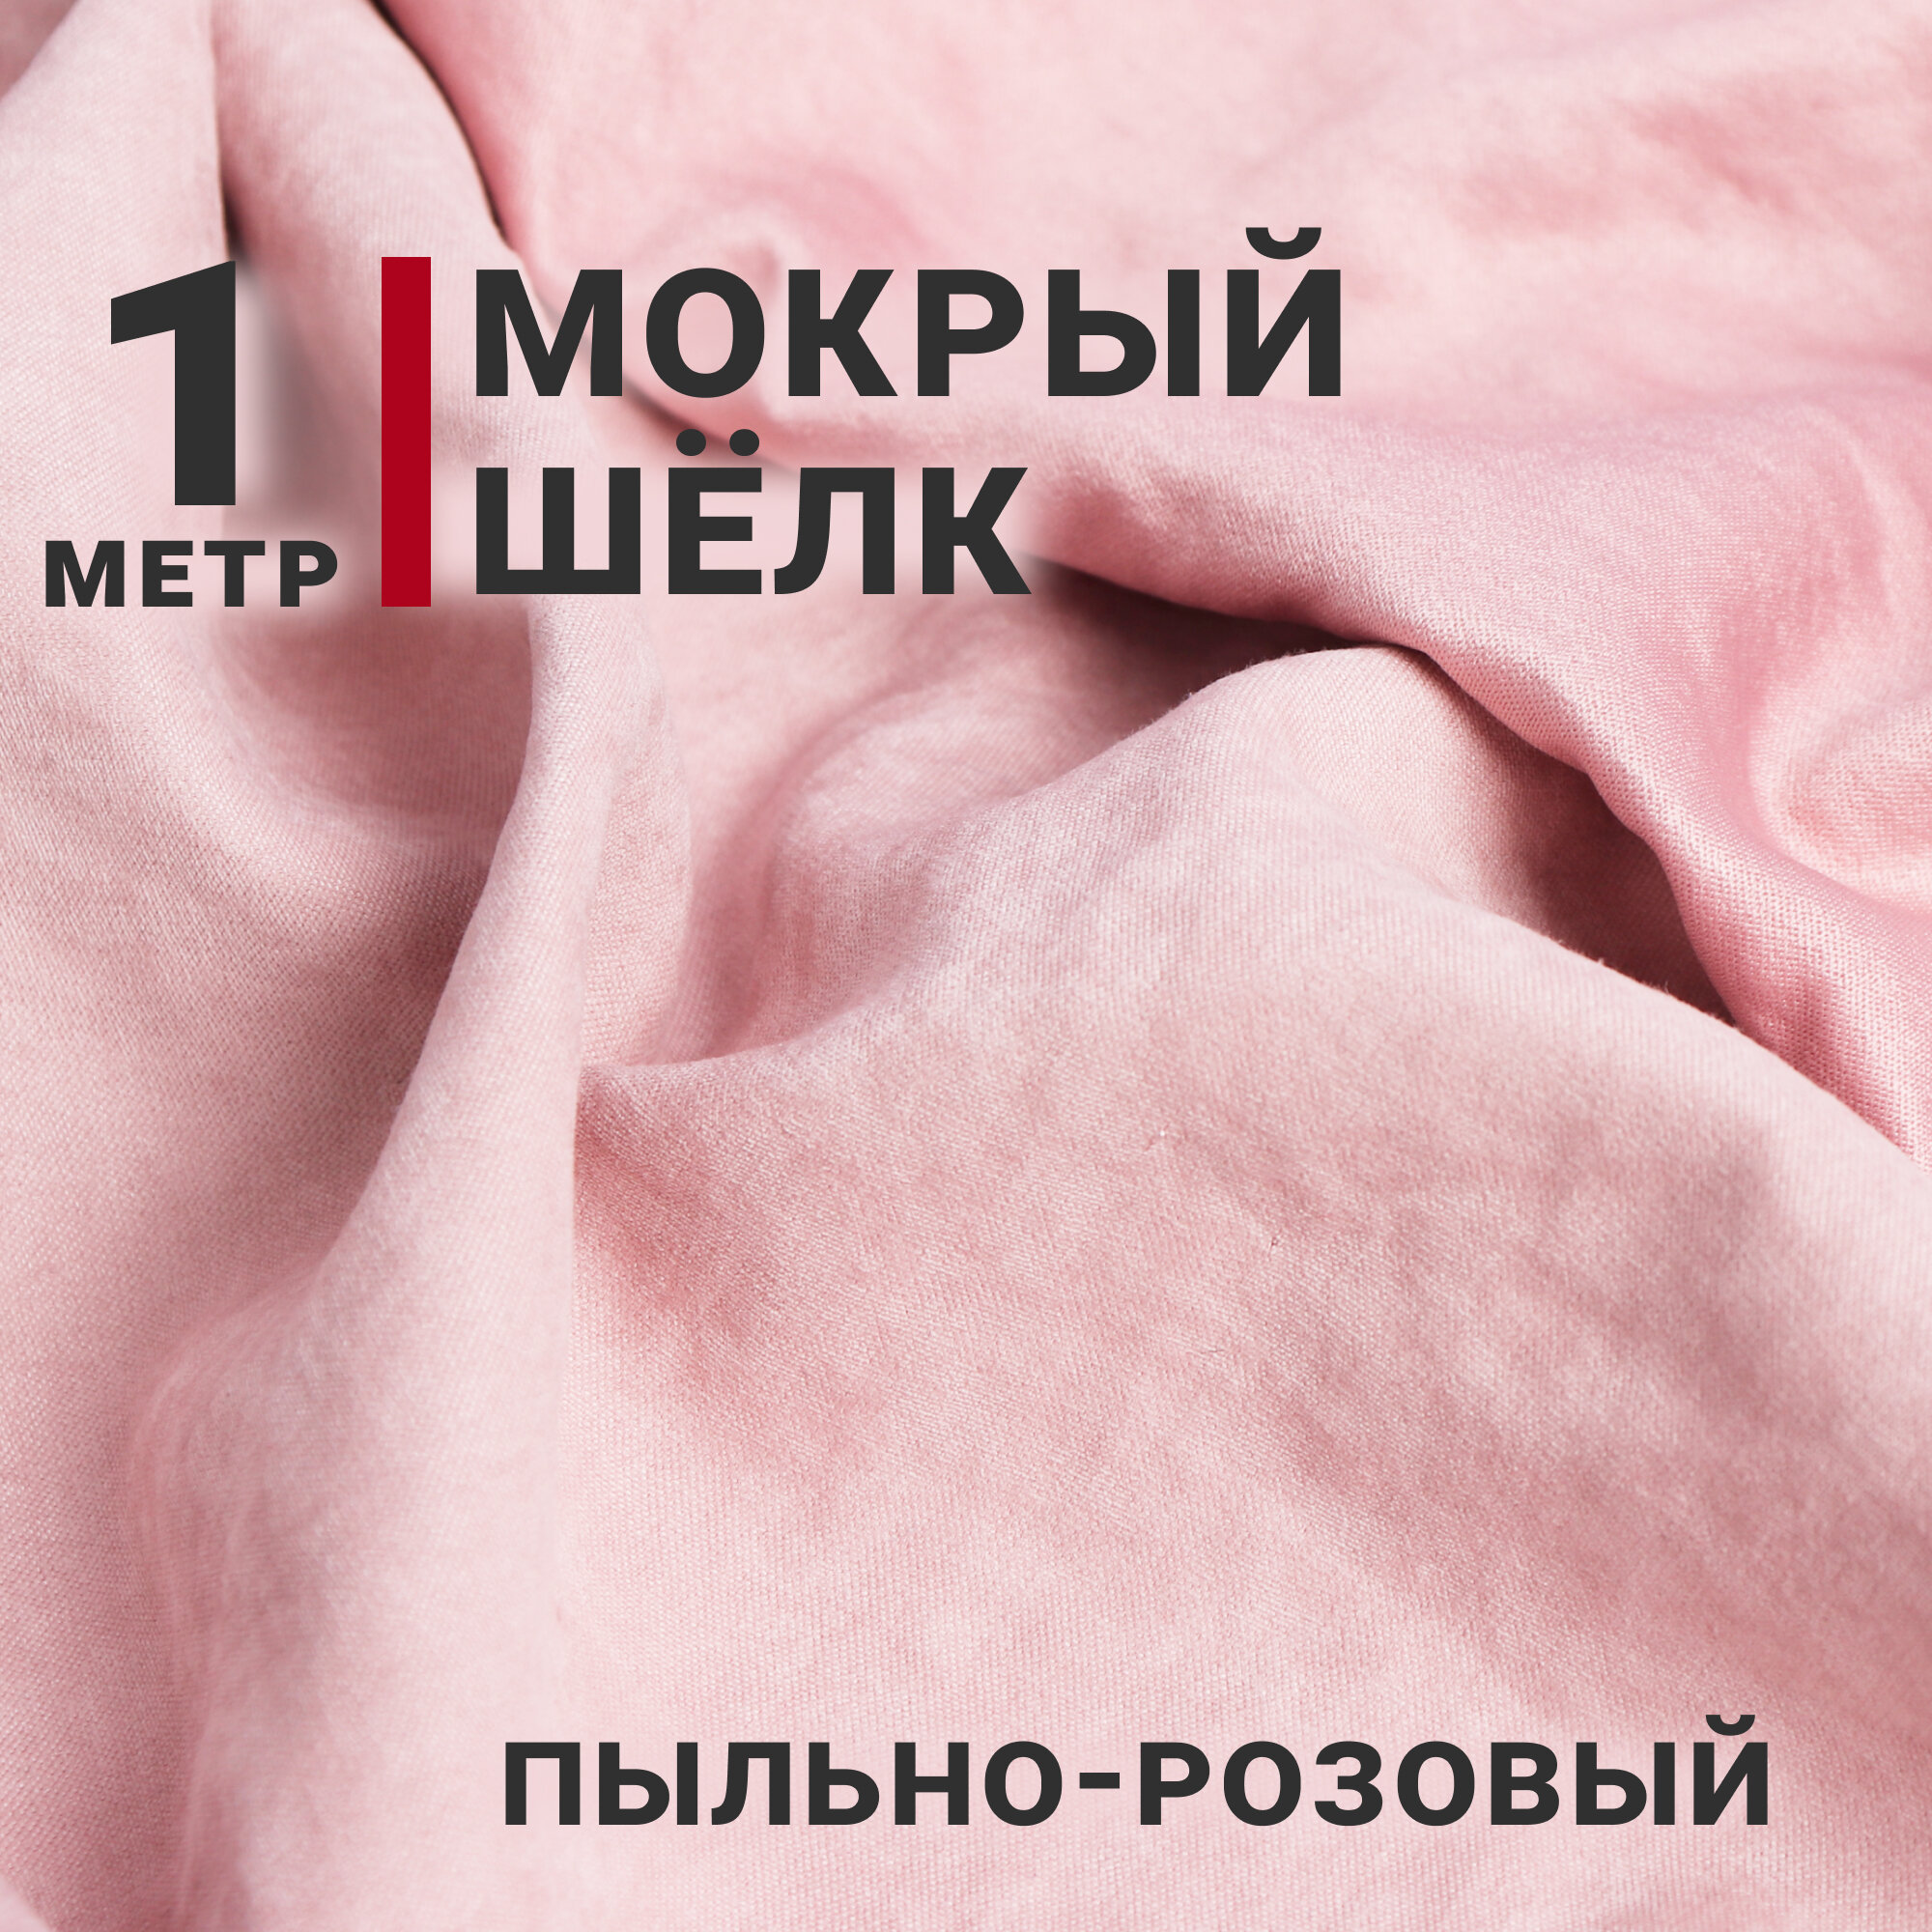 Ткань Мокрый шелк, цвет Пыльно-розовый, отрез 1м х 150см, Плотность 165гр/м. кв